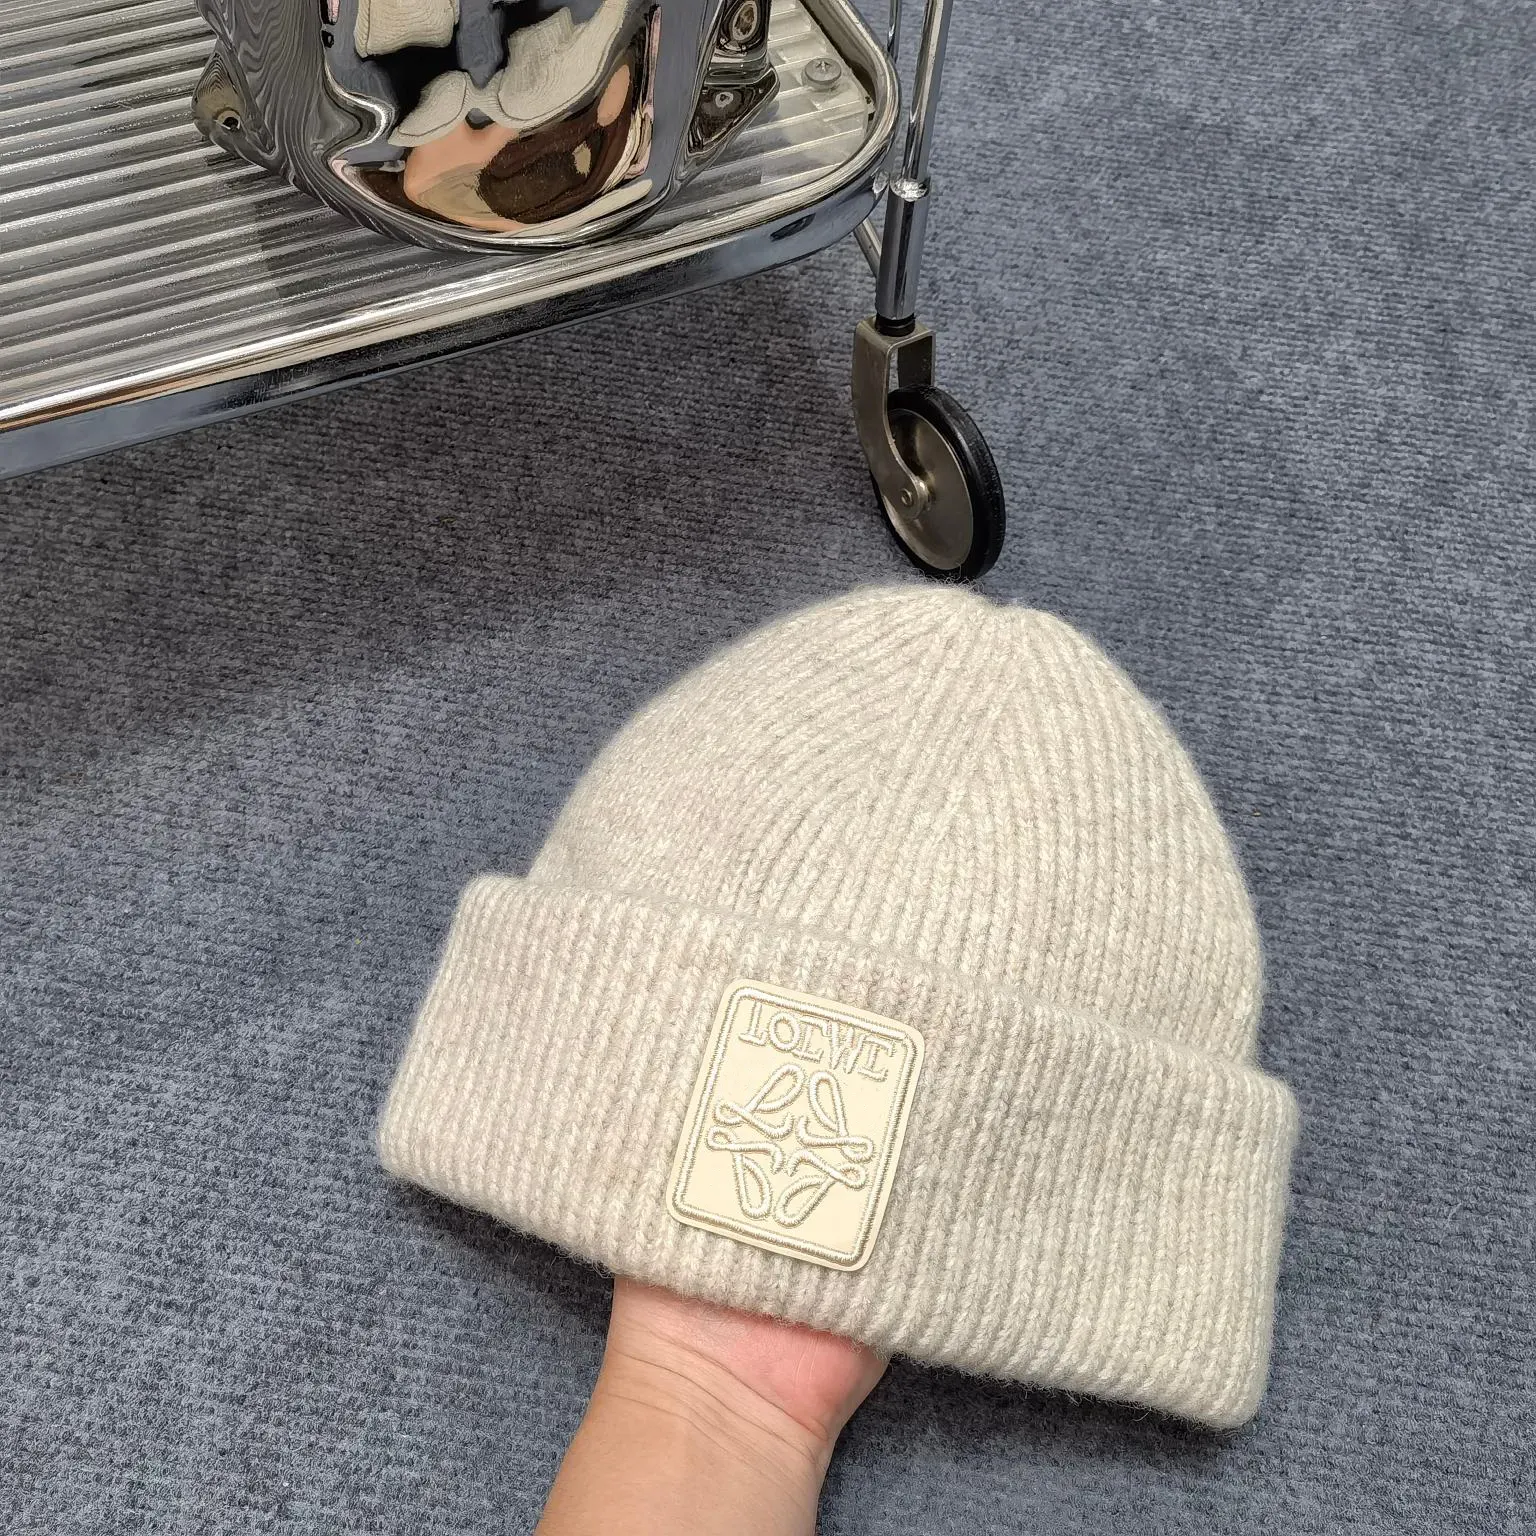 Caps beanie / crâne caps lowewe concepteur chapeau luxe de qualité supérieure loi luxe lowe tricot de chape